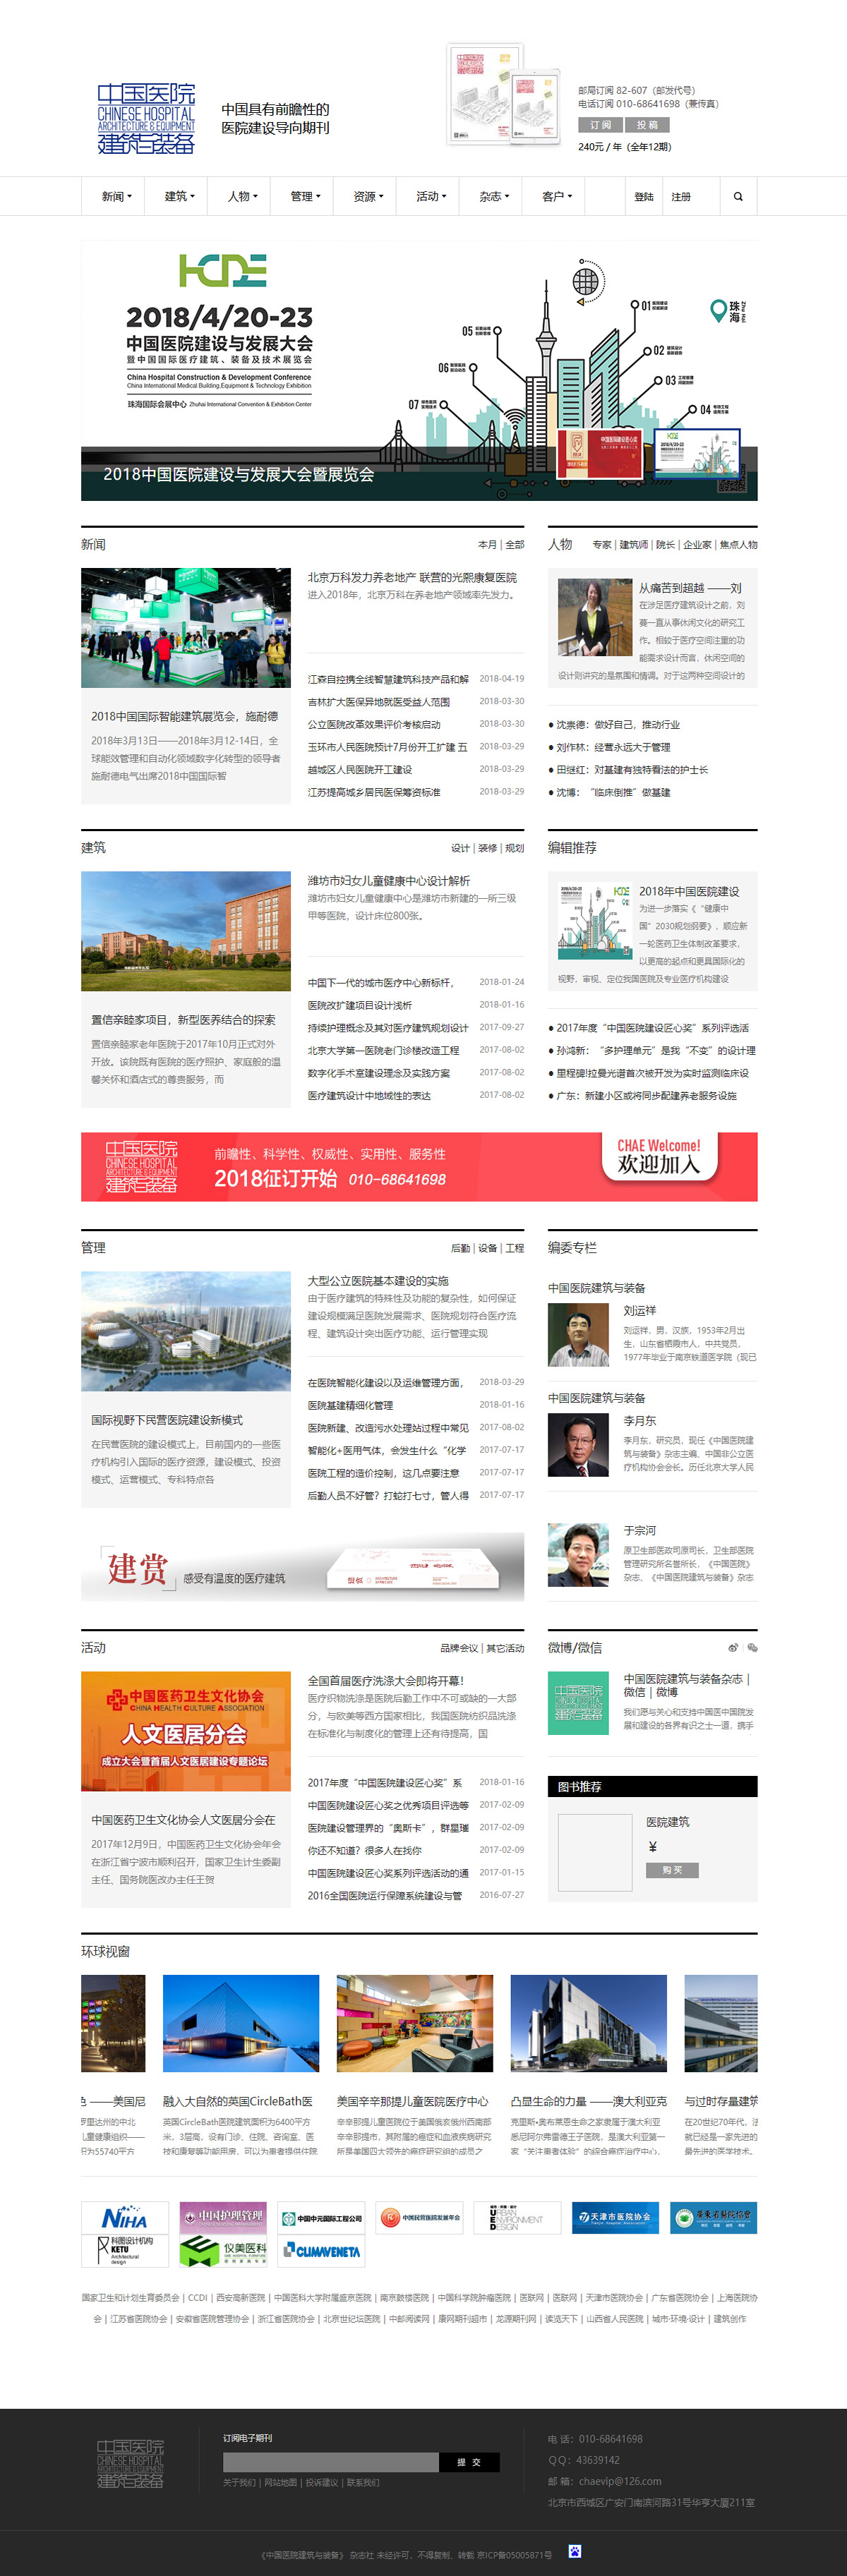 《中国医院建筑与装备》杂志社-首页